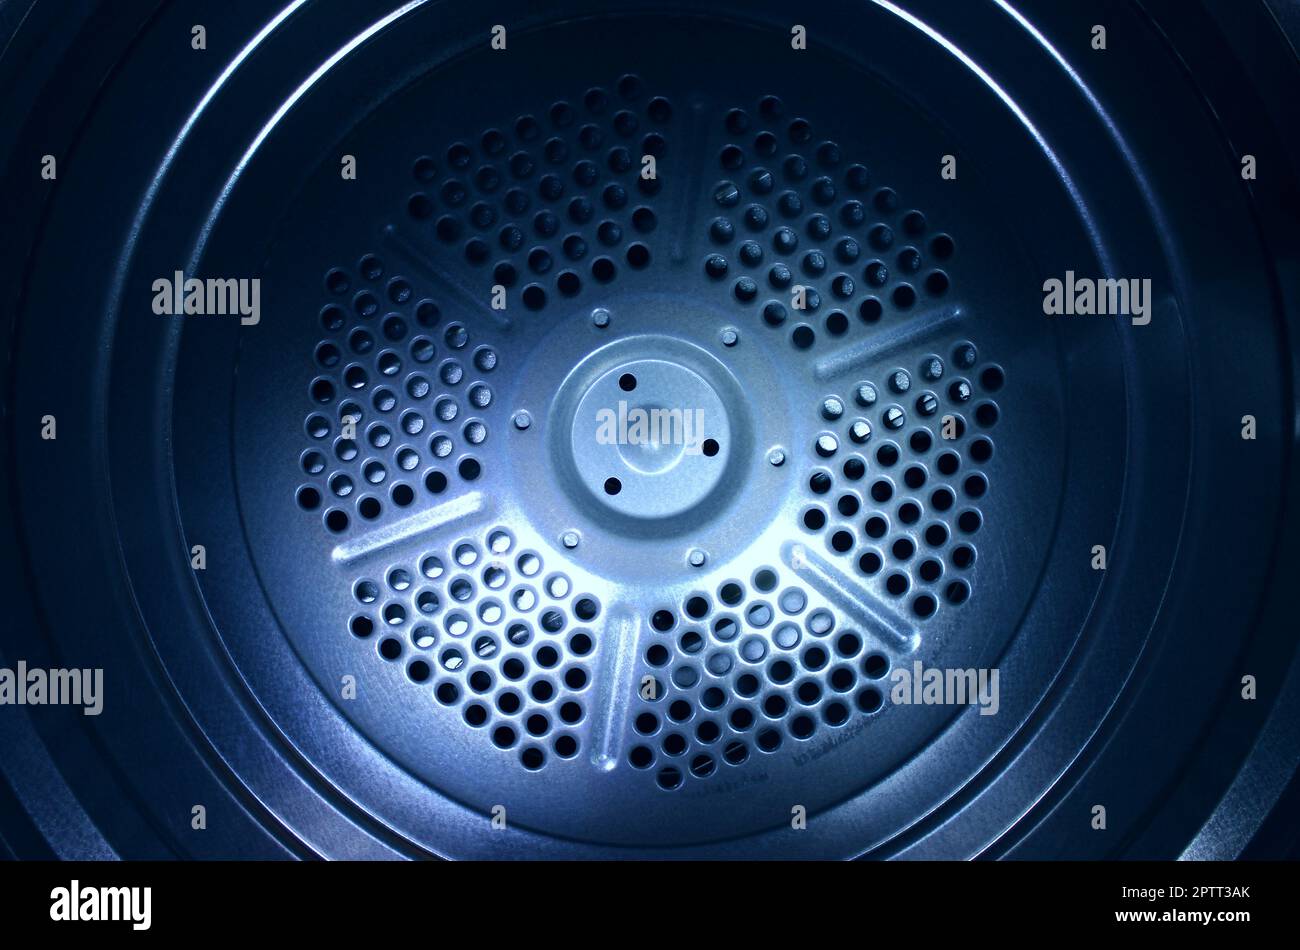 Beleuchtete Rückseite der Aluminiumtrommel der Waschmaschine  Stockfotografie - Alamy